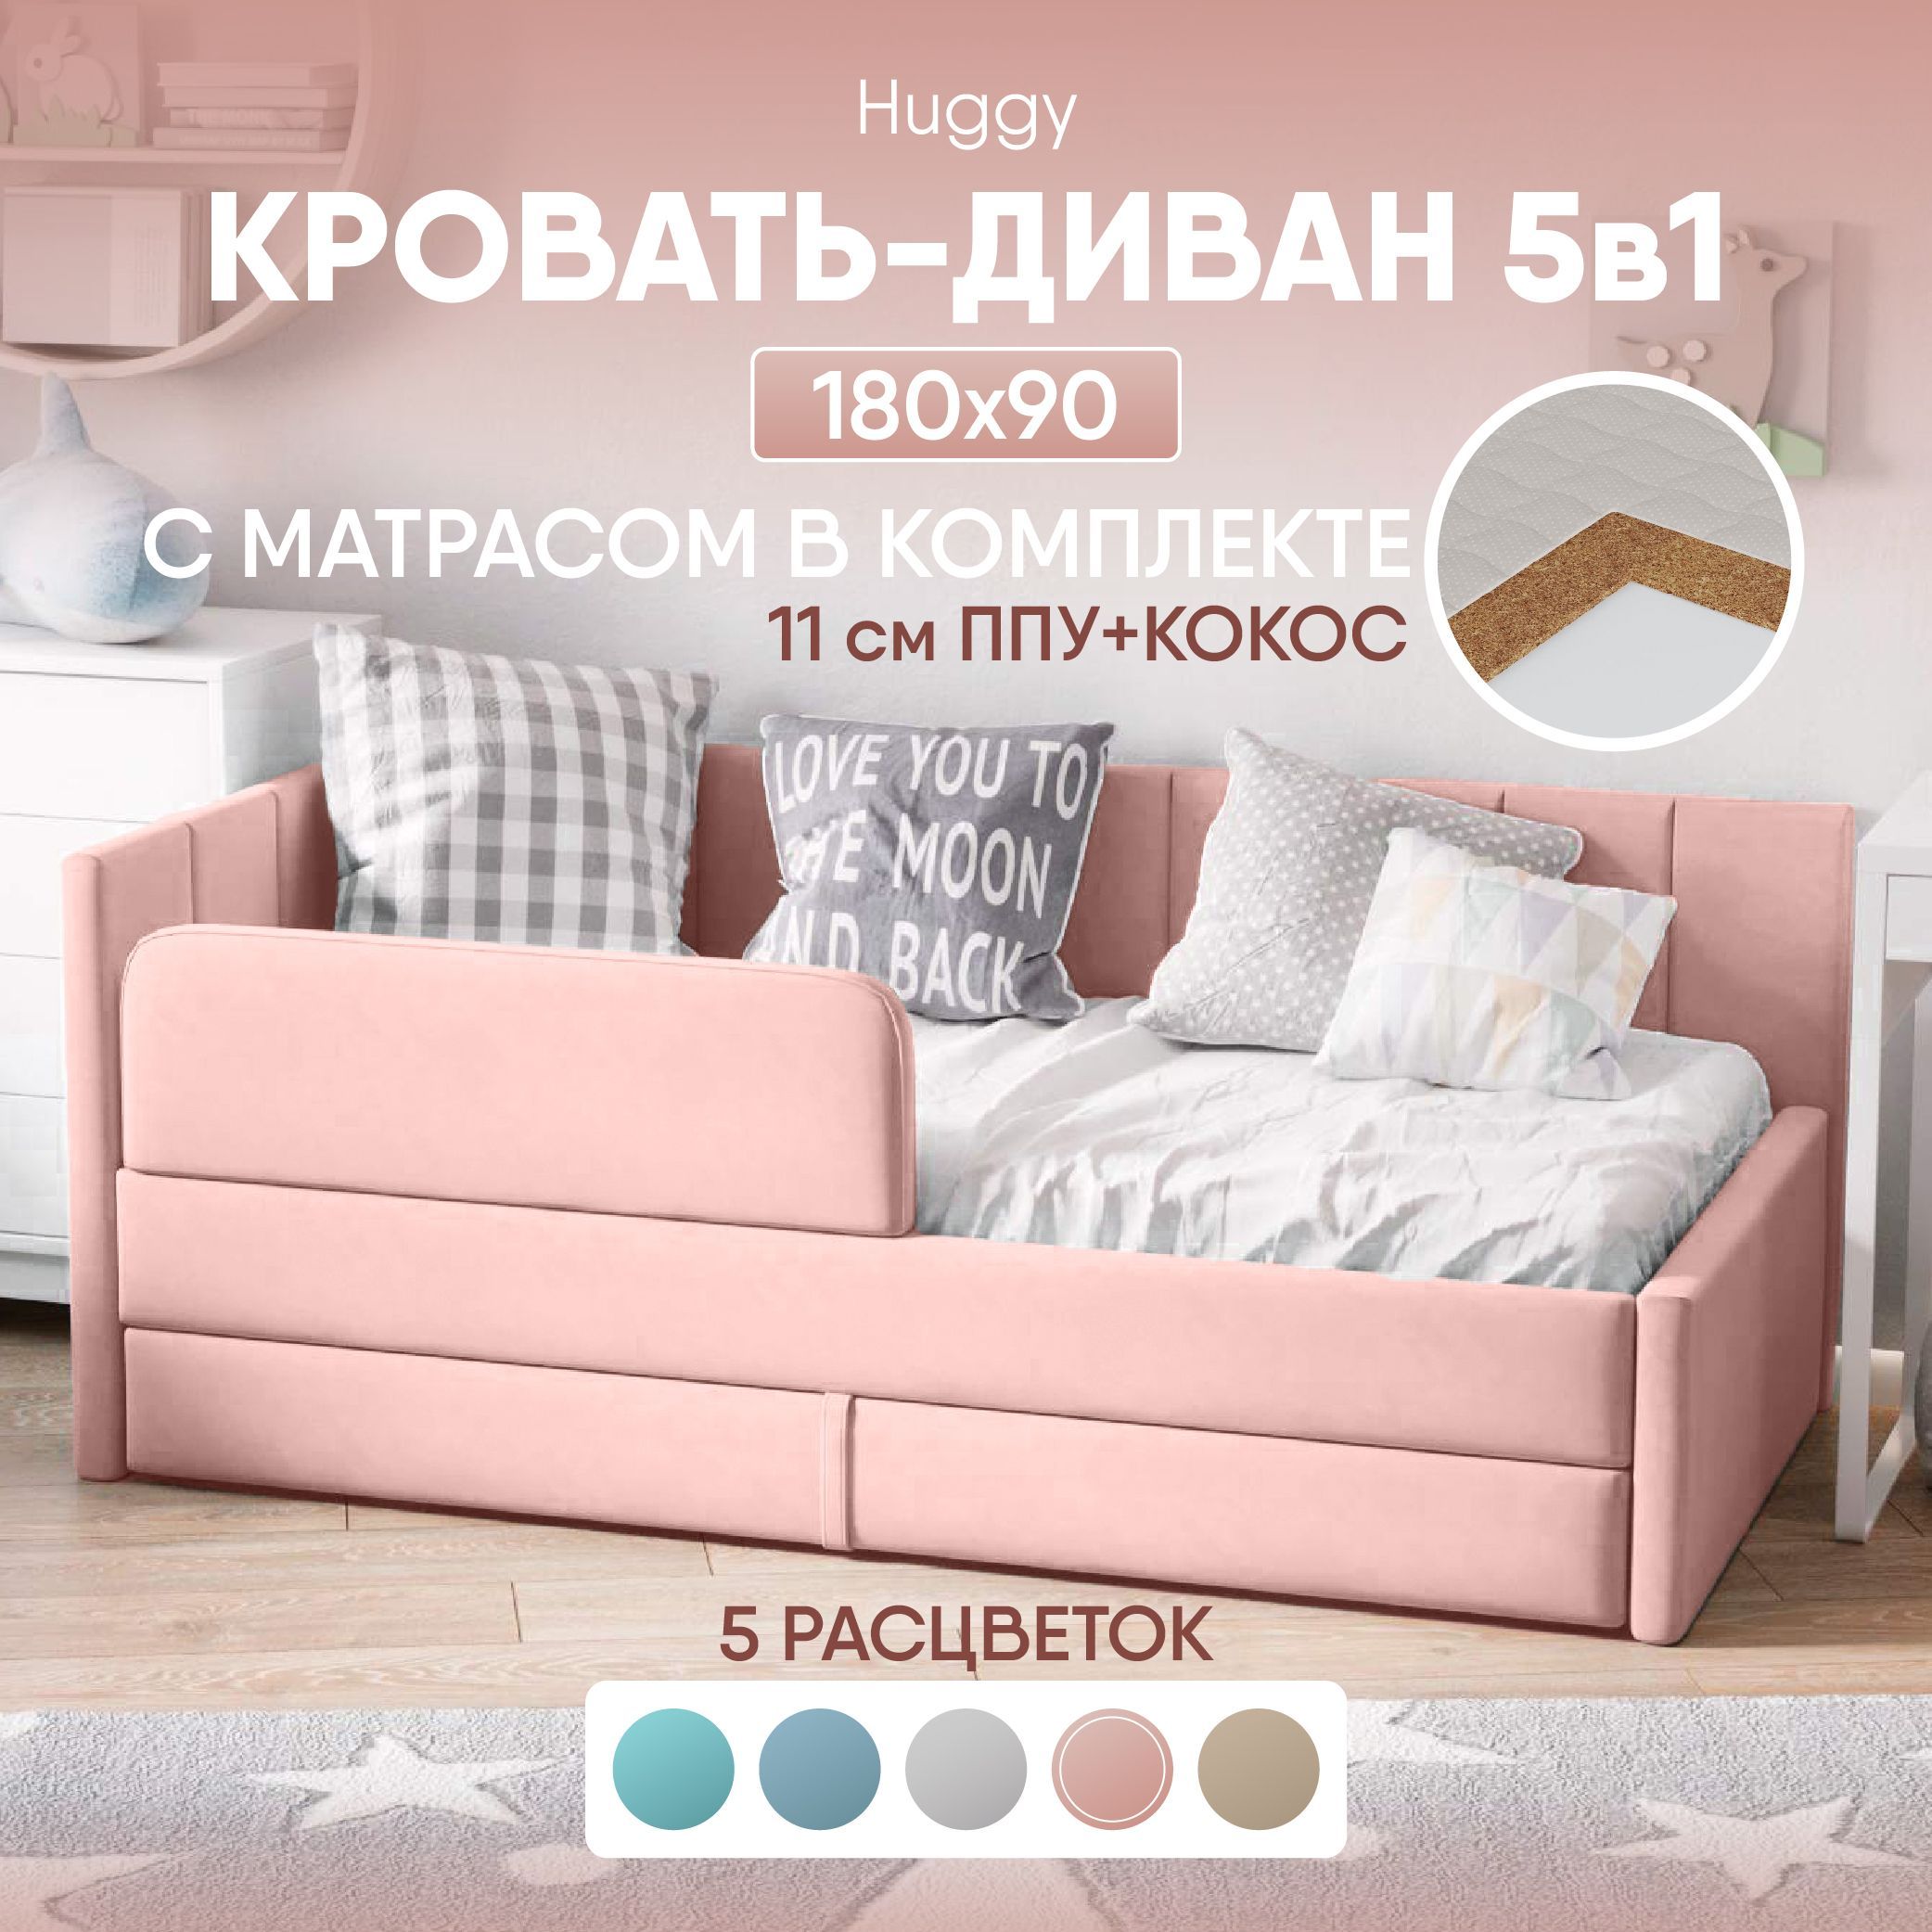 Кровать детская SleepAngel Huggy с матрасом, 180х90 см, розовая, диван кровать от 3 лет